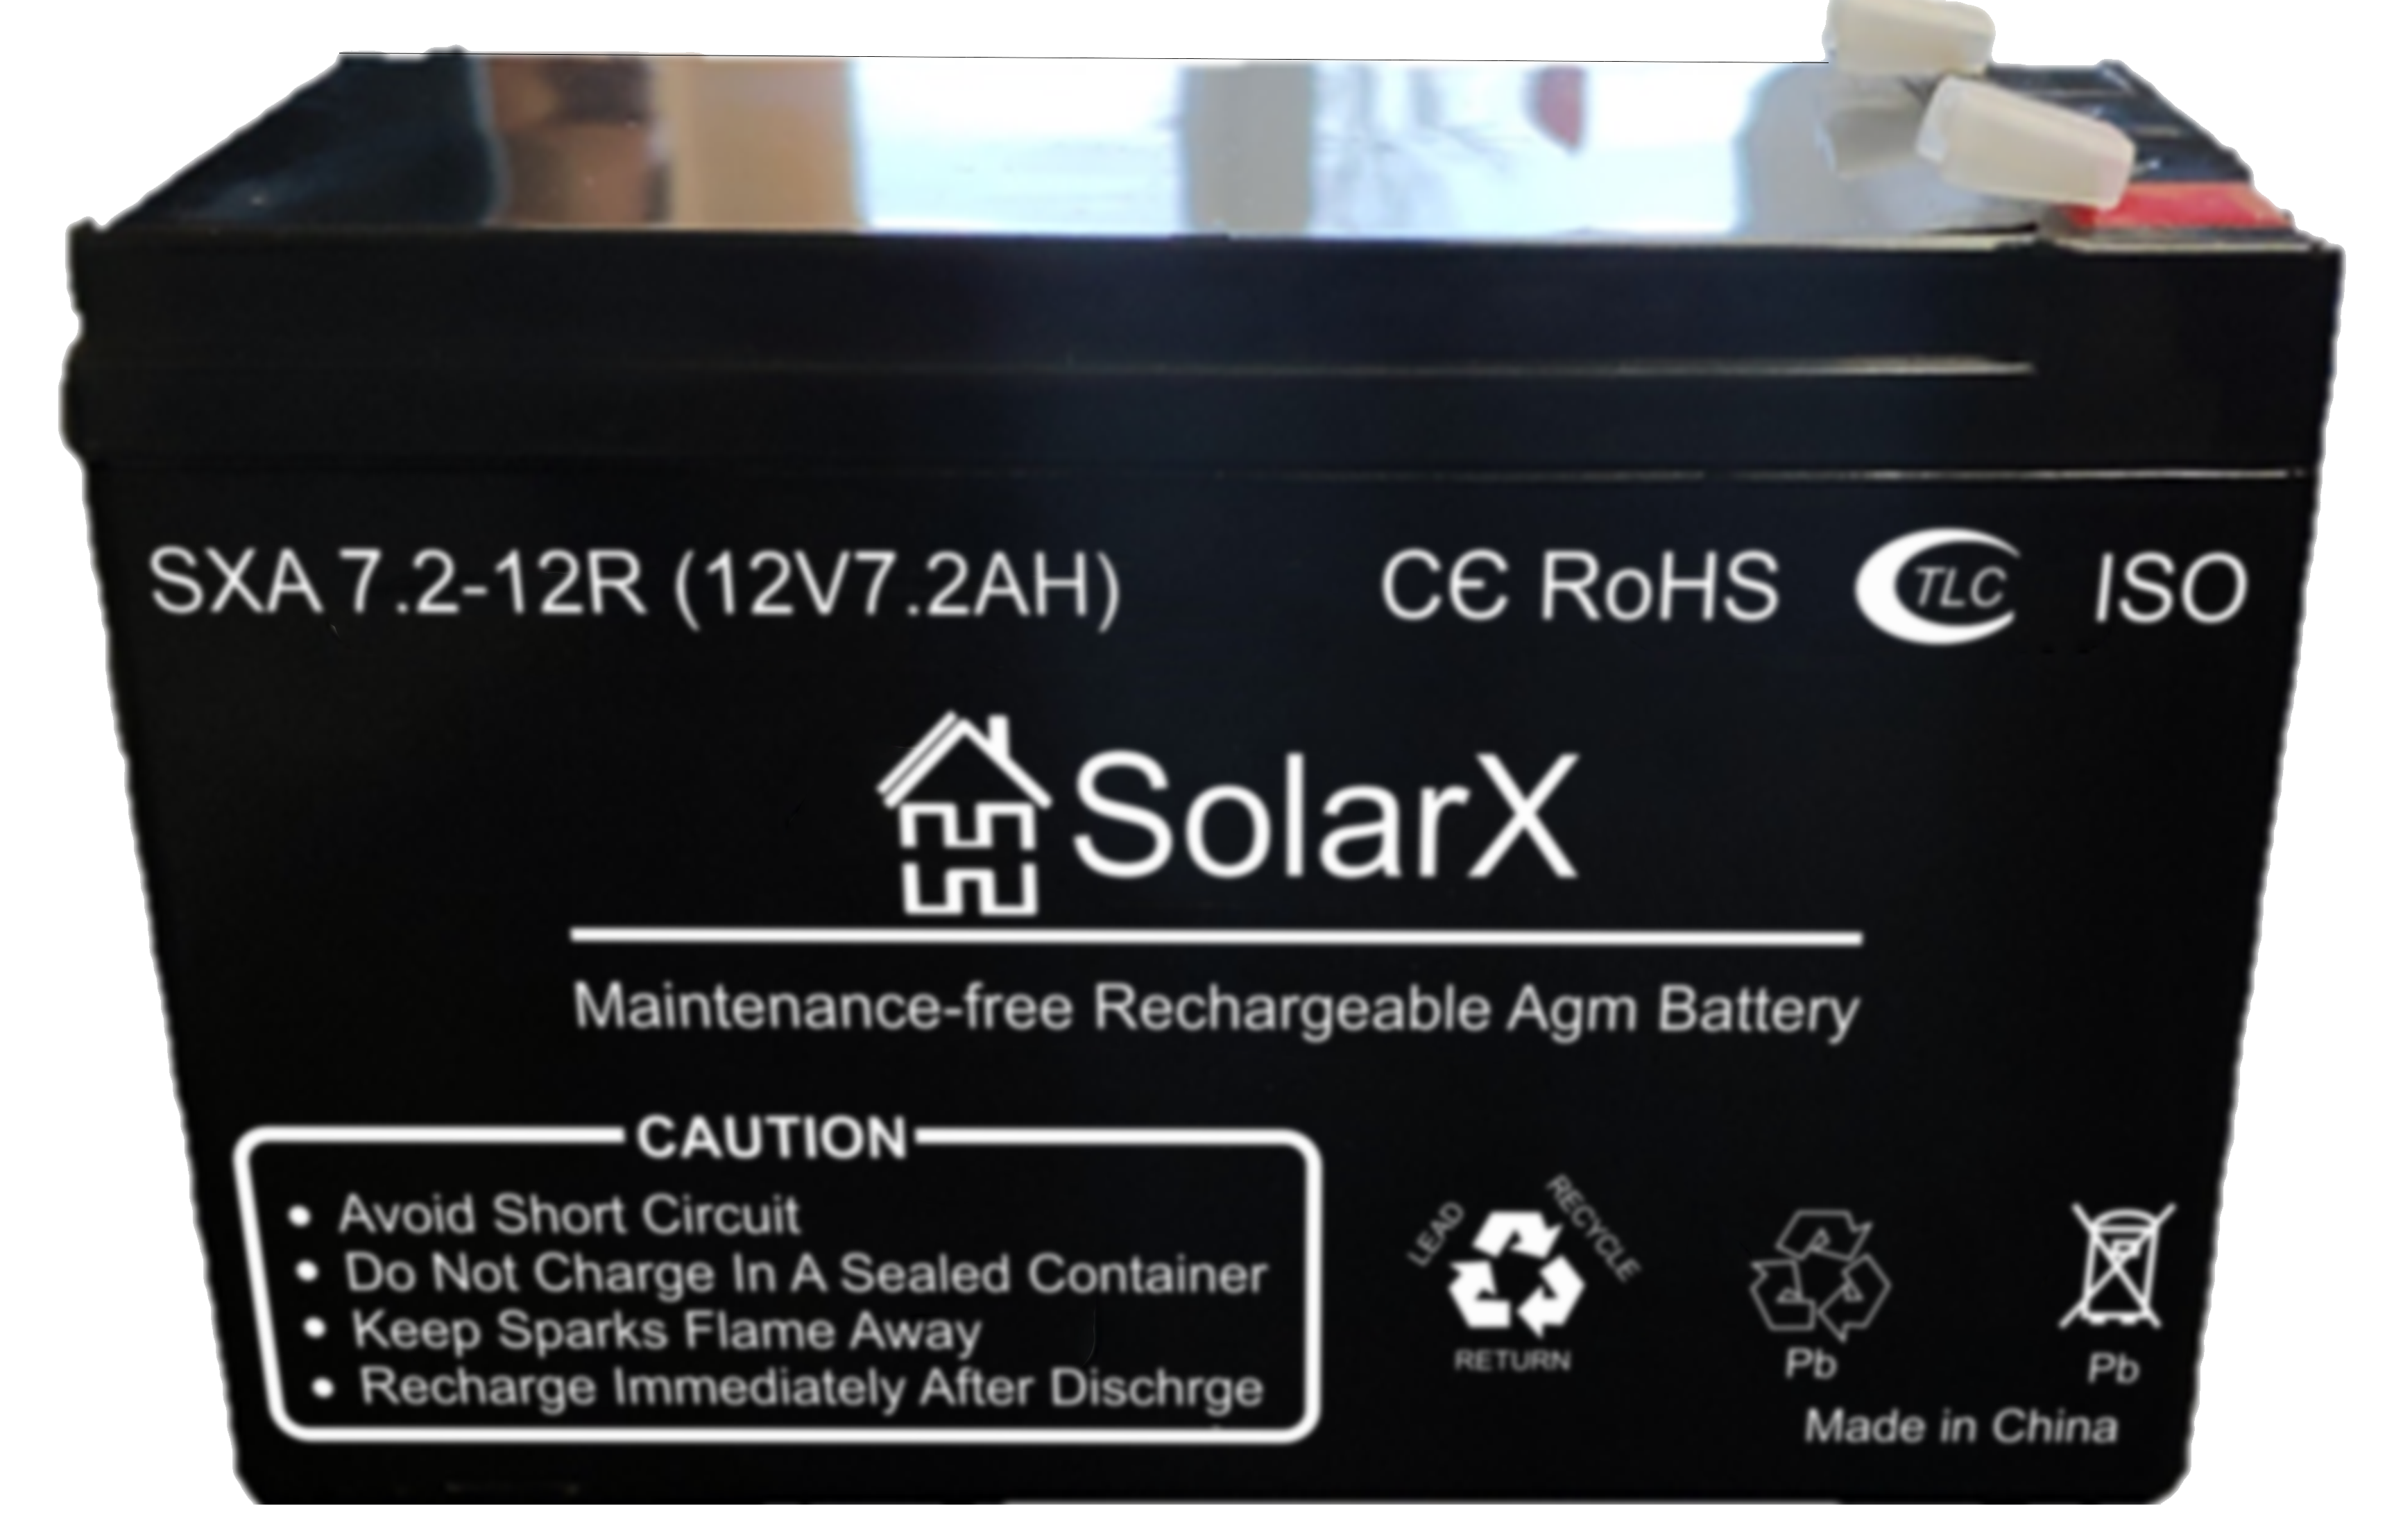 Solarx sxa 7.2 12r